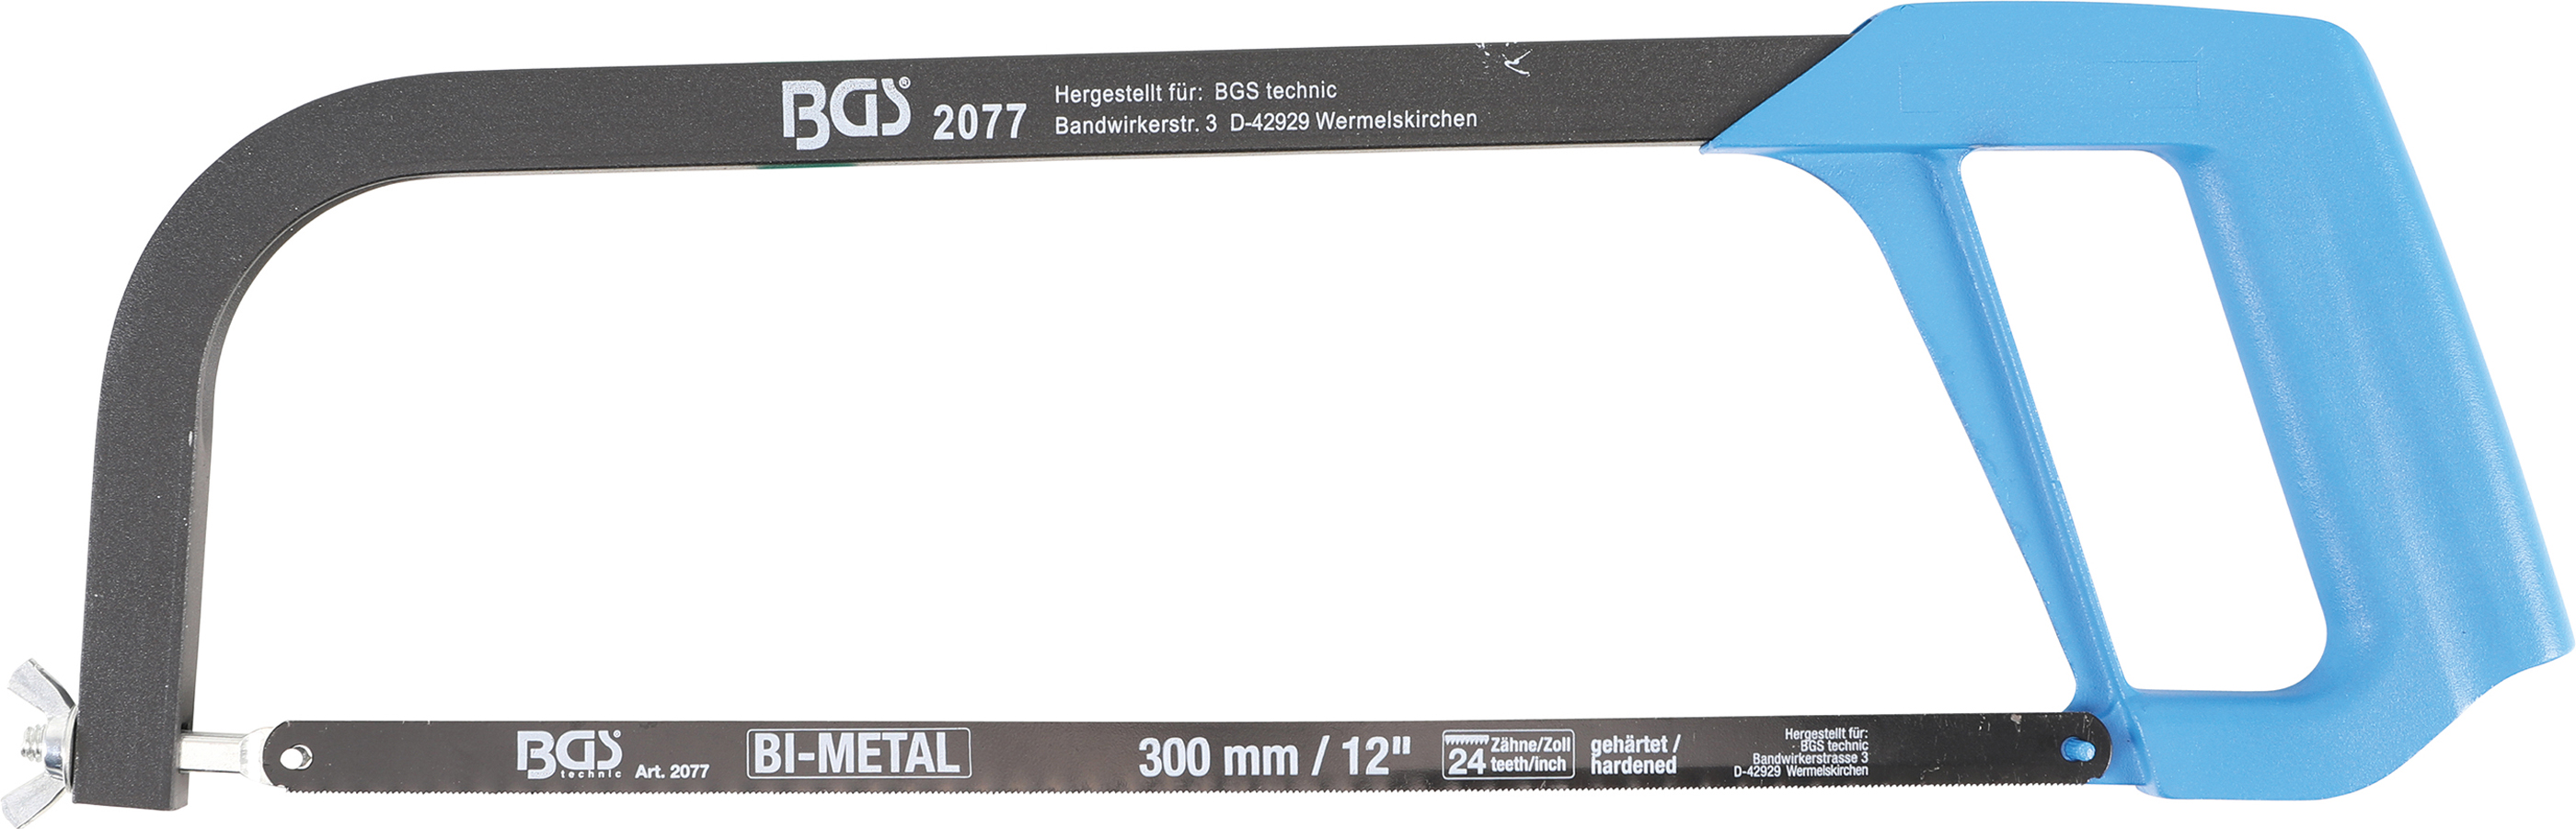 BGS 2077 Ferastrau manual,cadru patrat, include panza de 300 mm